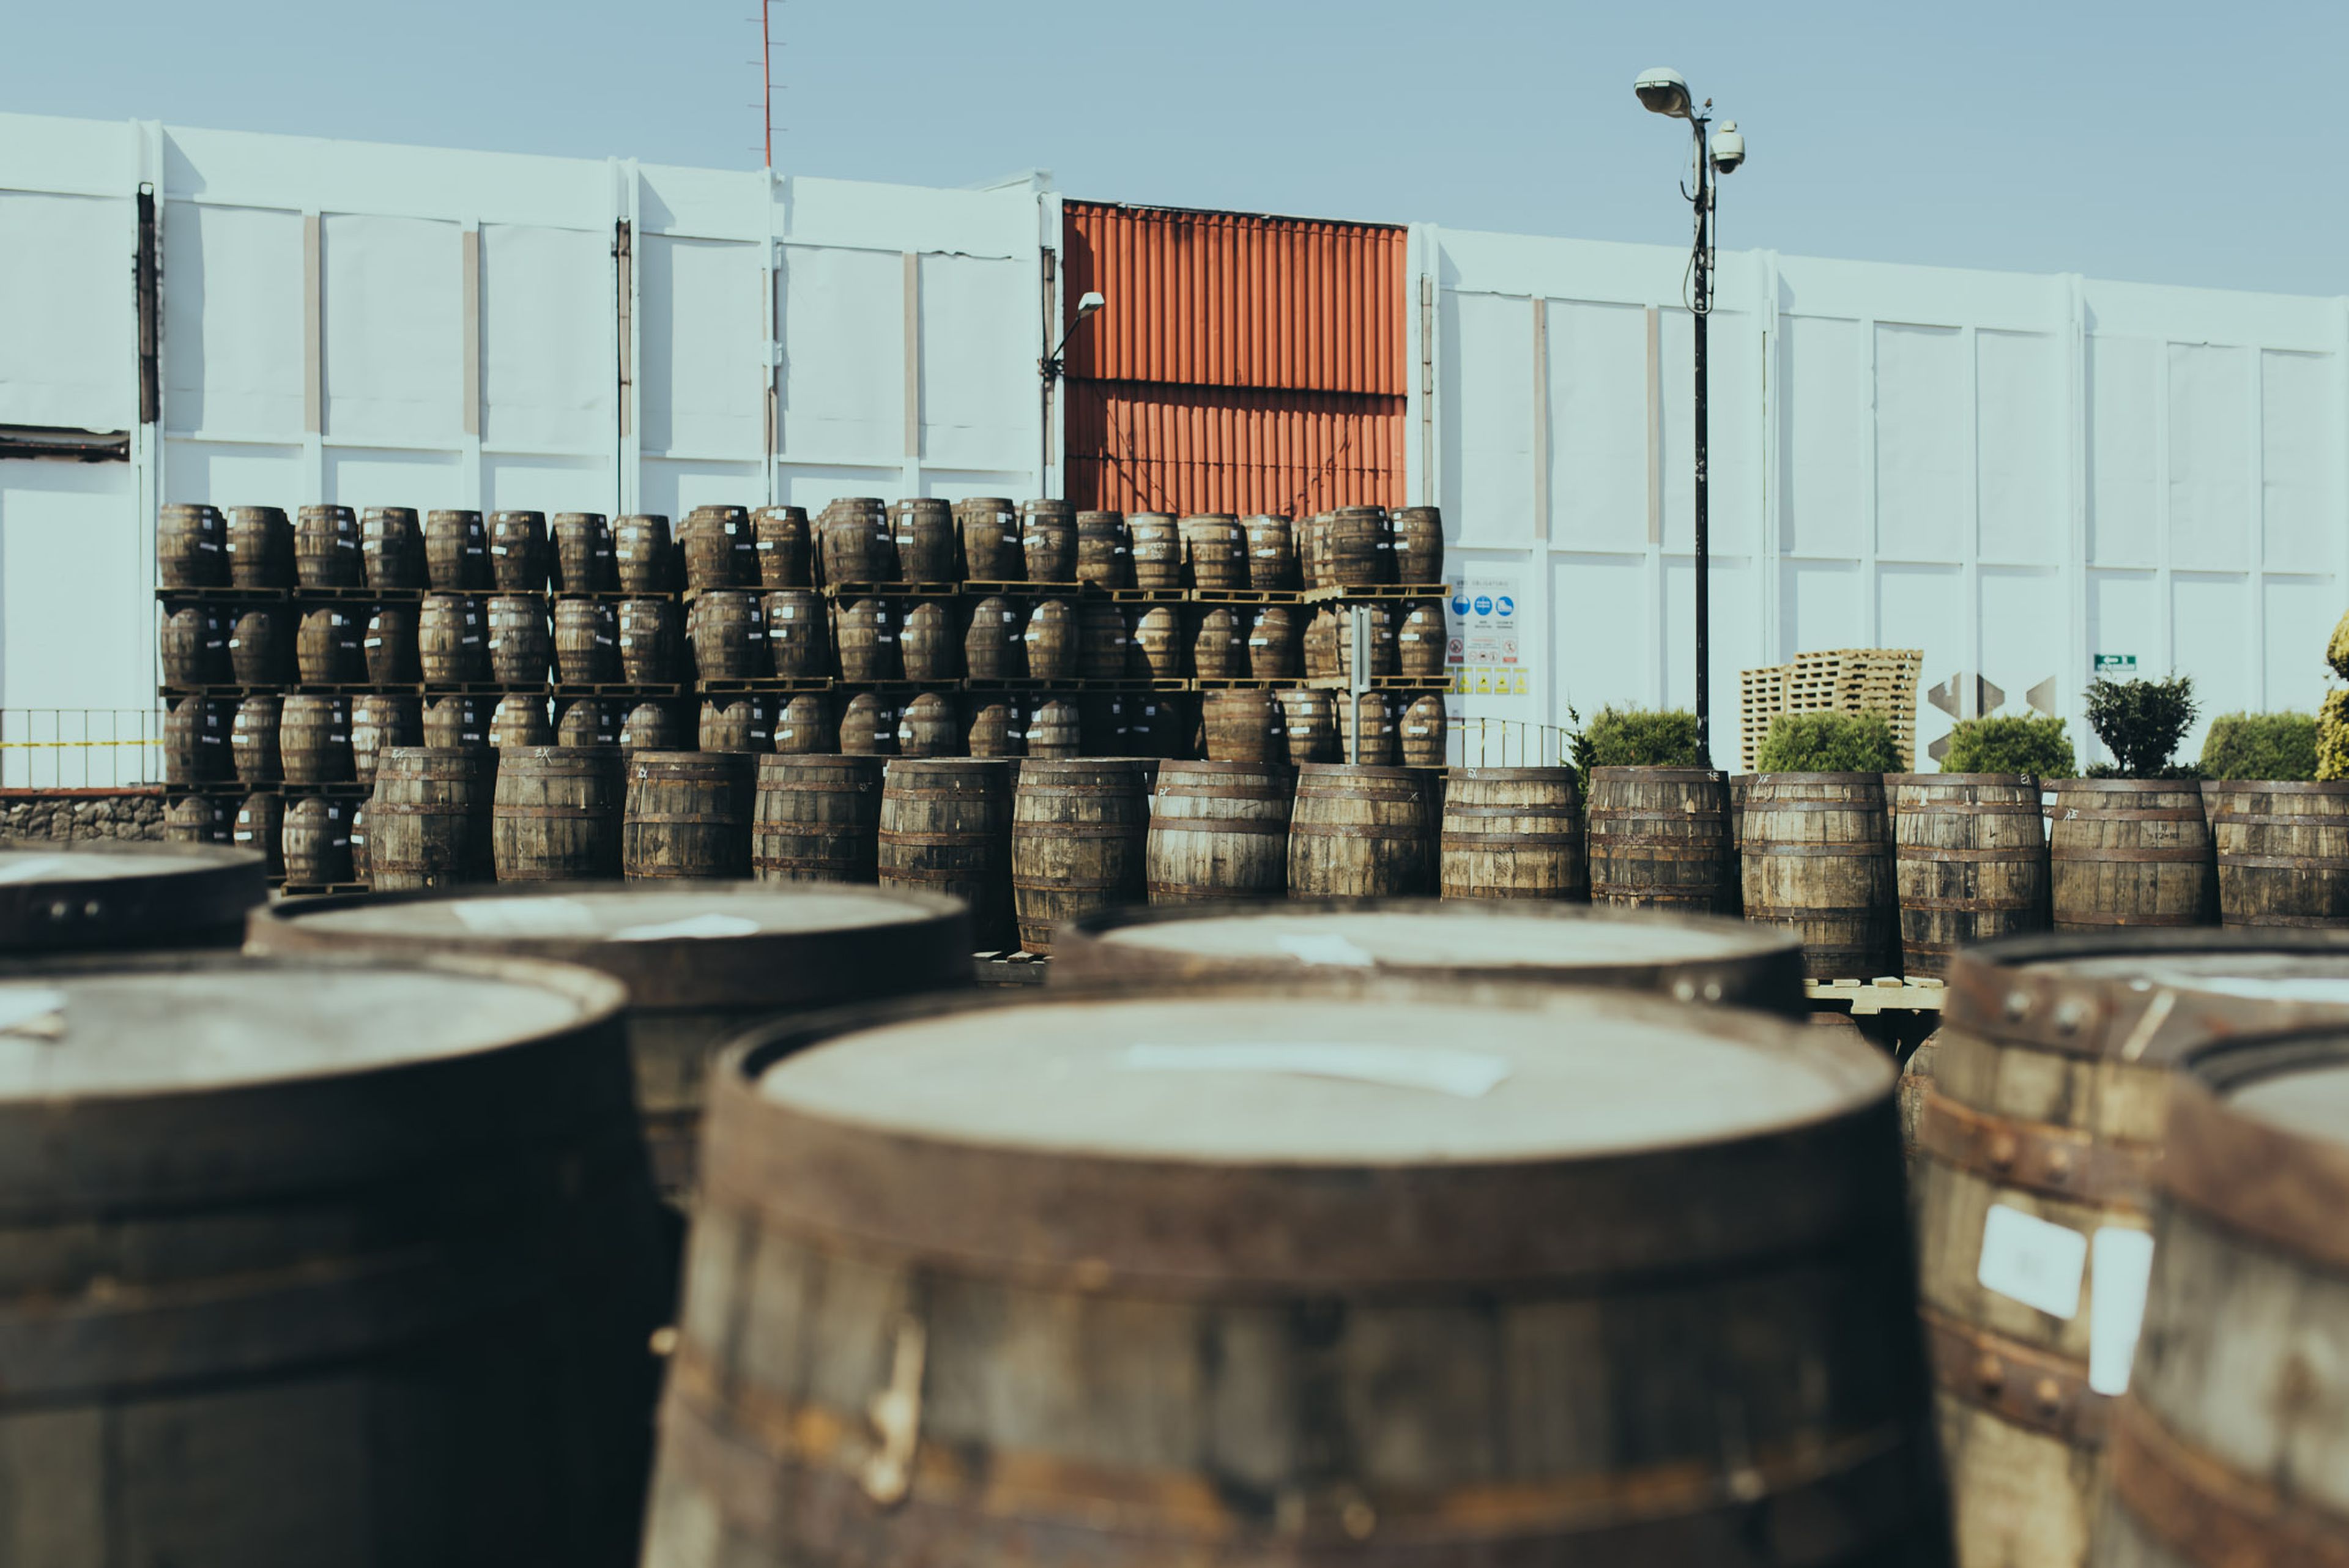 Barrels of Ron Zacapa Rum